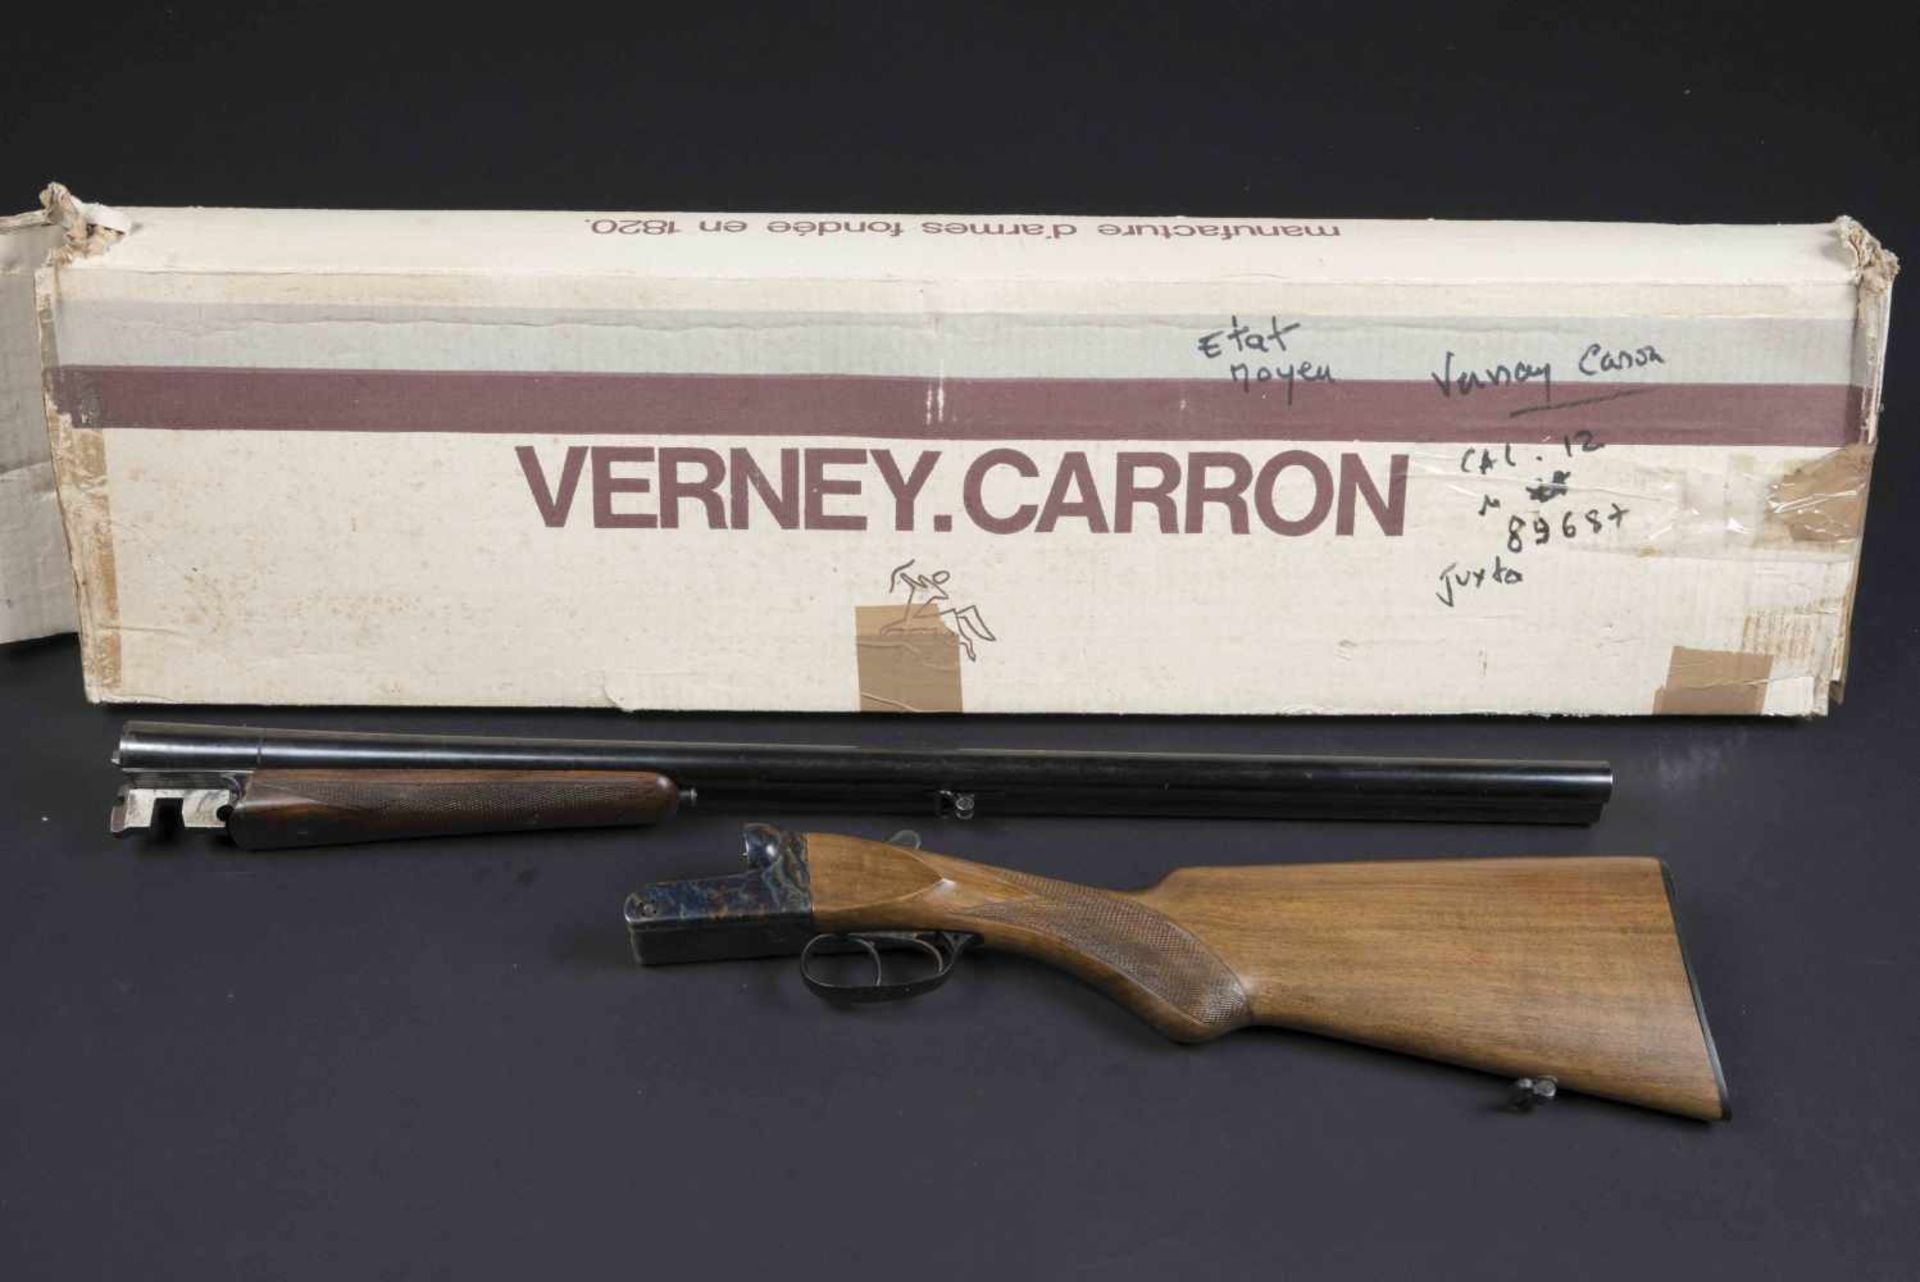 Fusil de chasse Verney Carron Catégorie C Modèle Pionnier, numéro 89687. Canon Verney Carron.